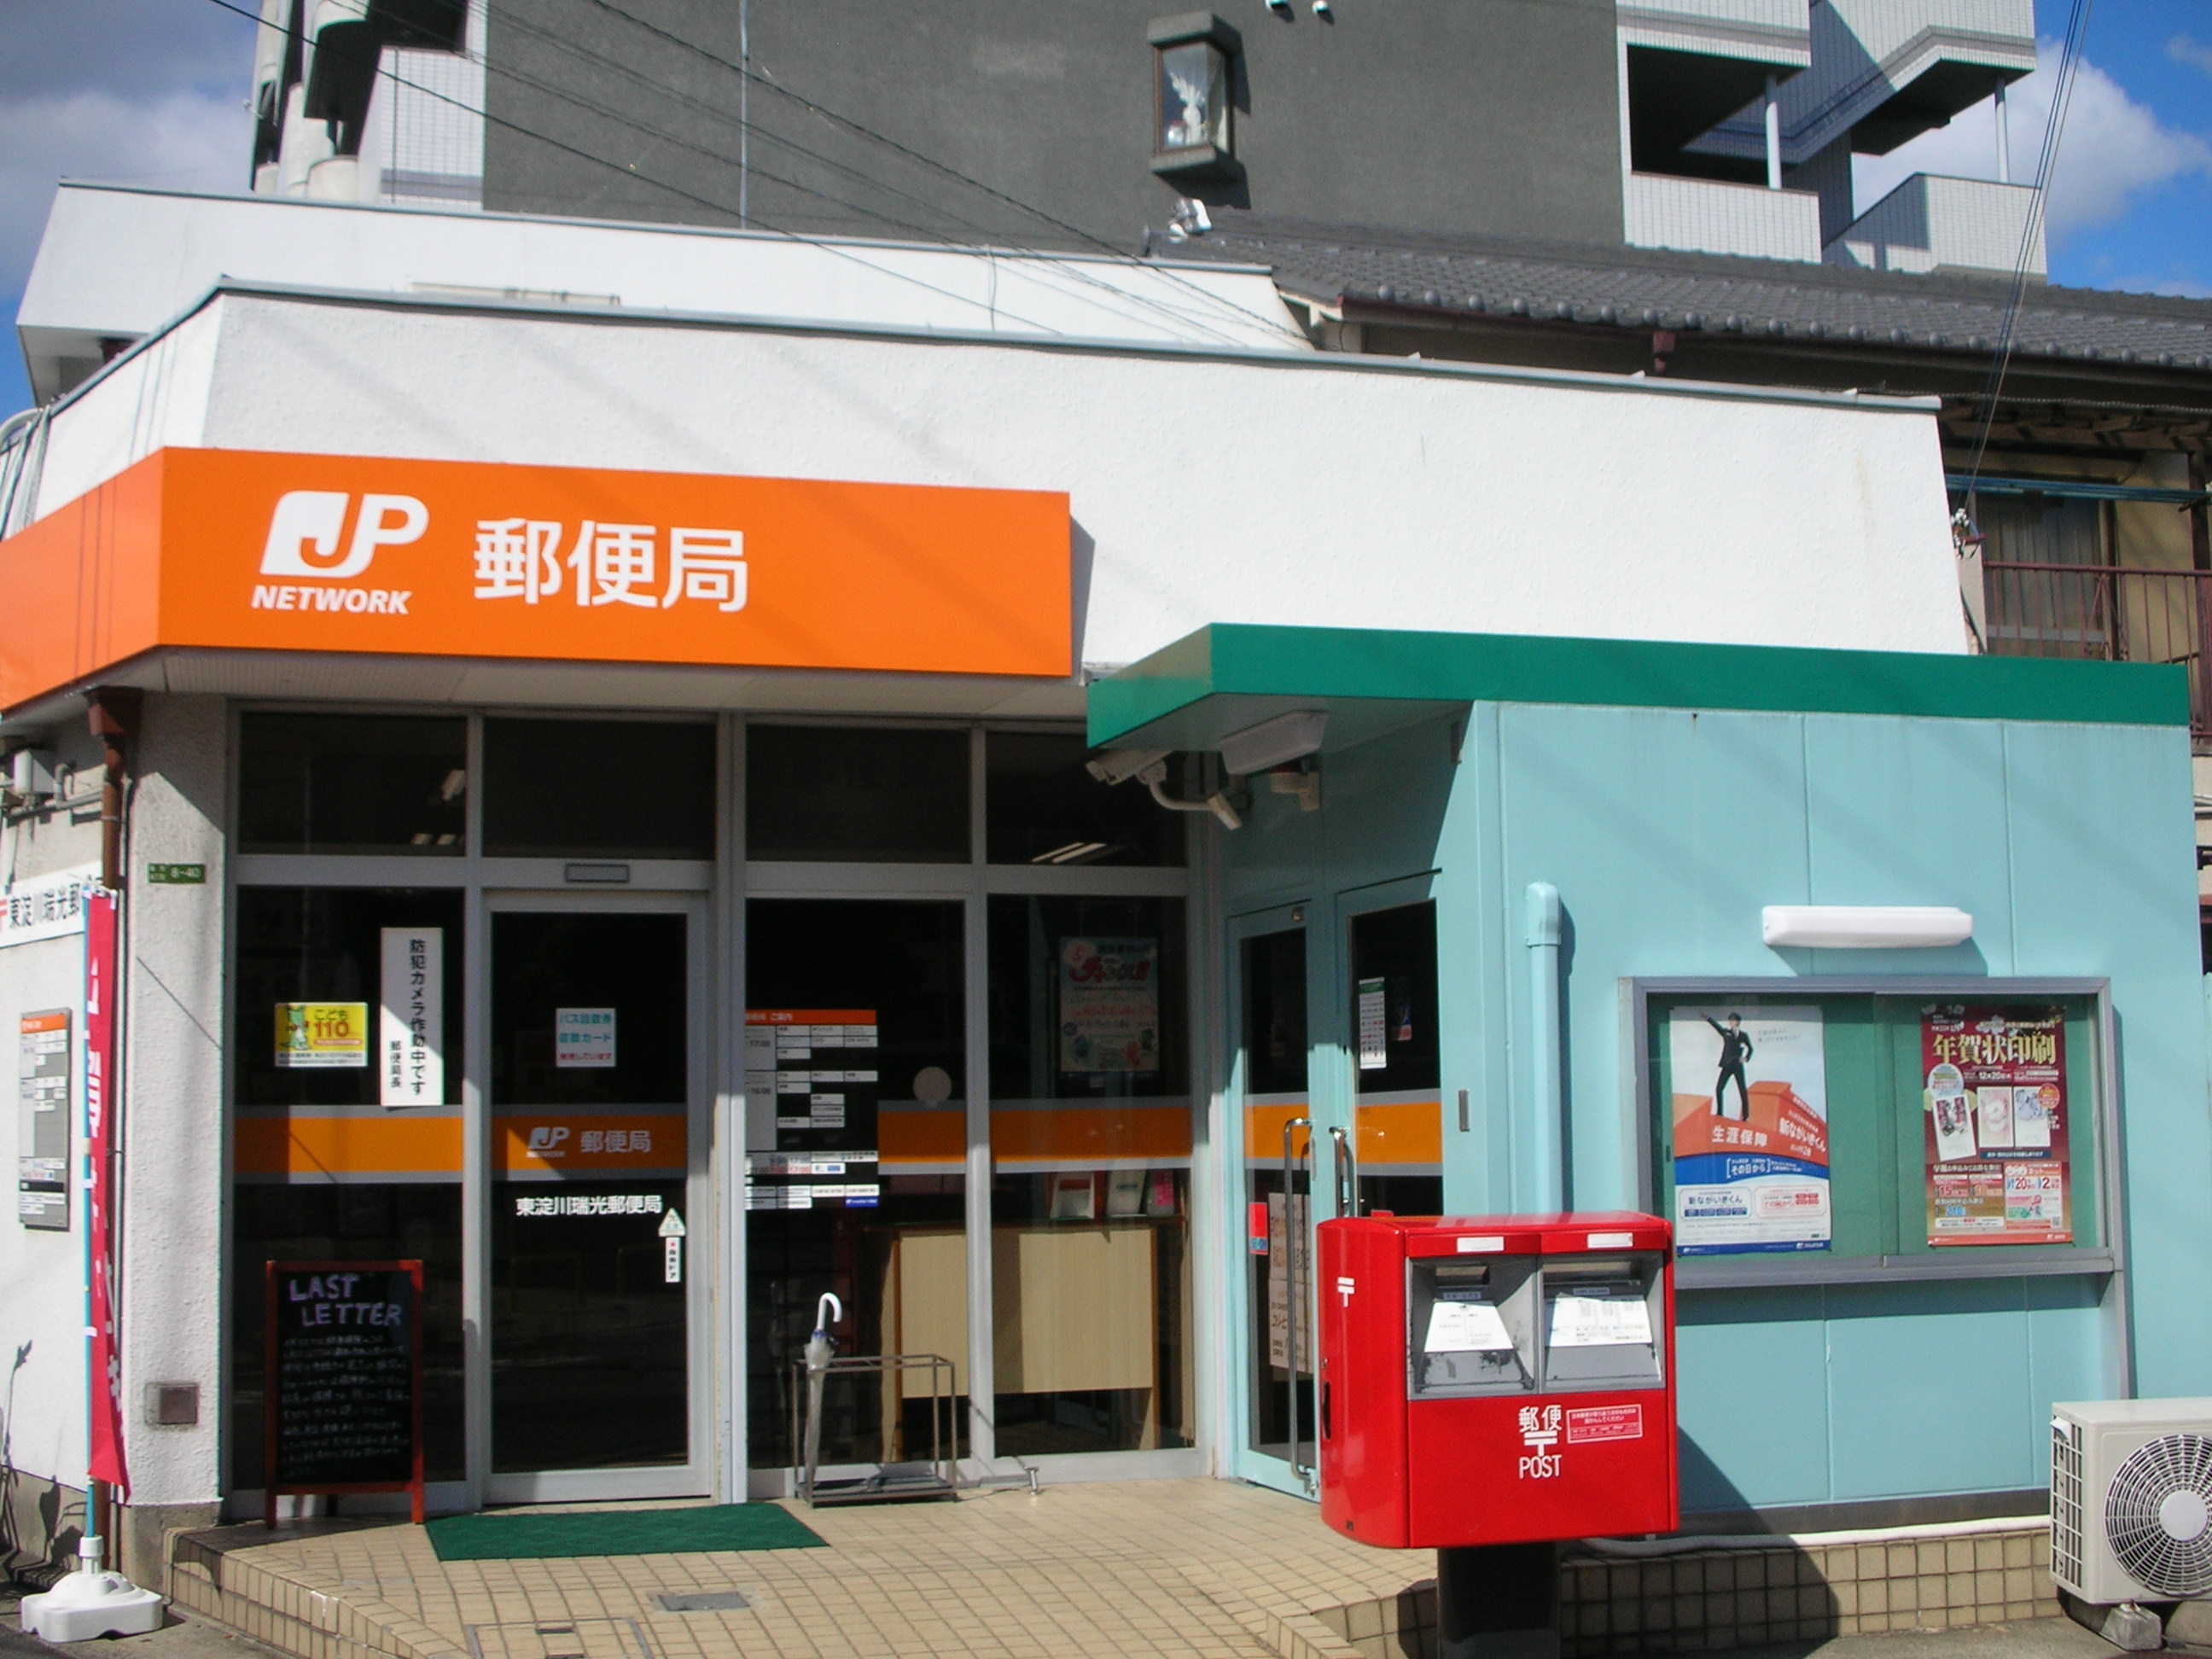 post office. Higashiyodogawa Zuiko Corporation 231m to the post office (post office)